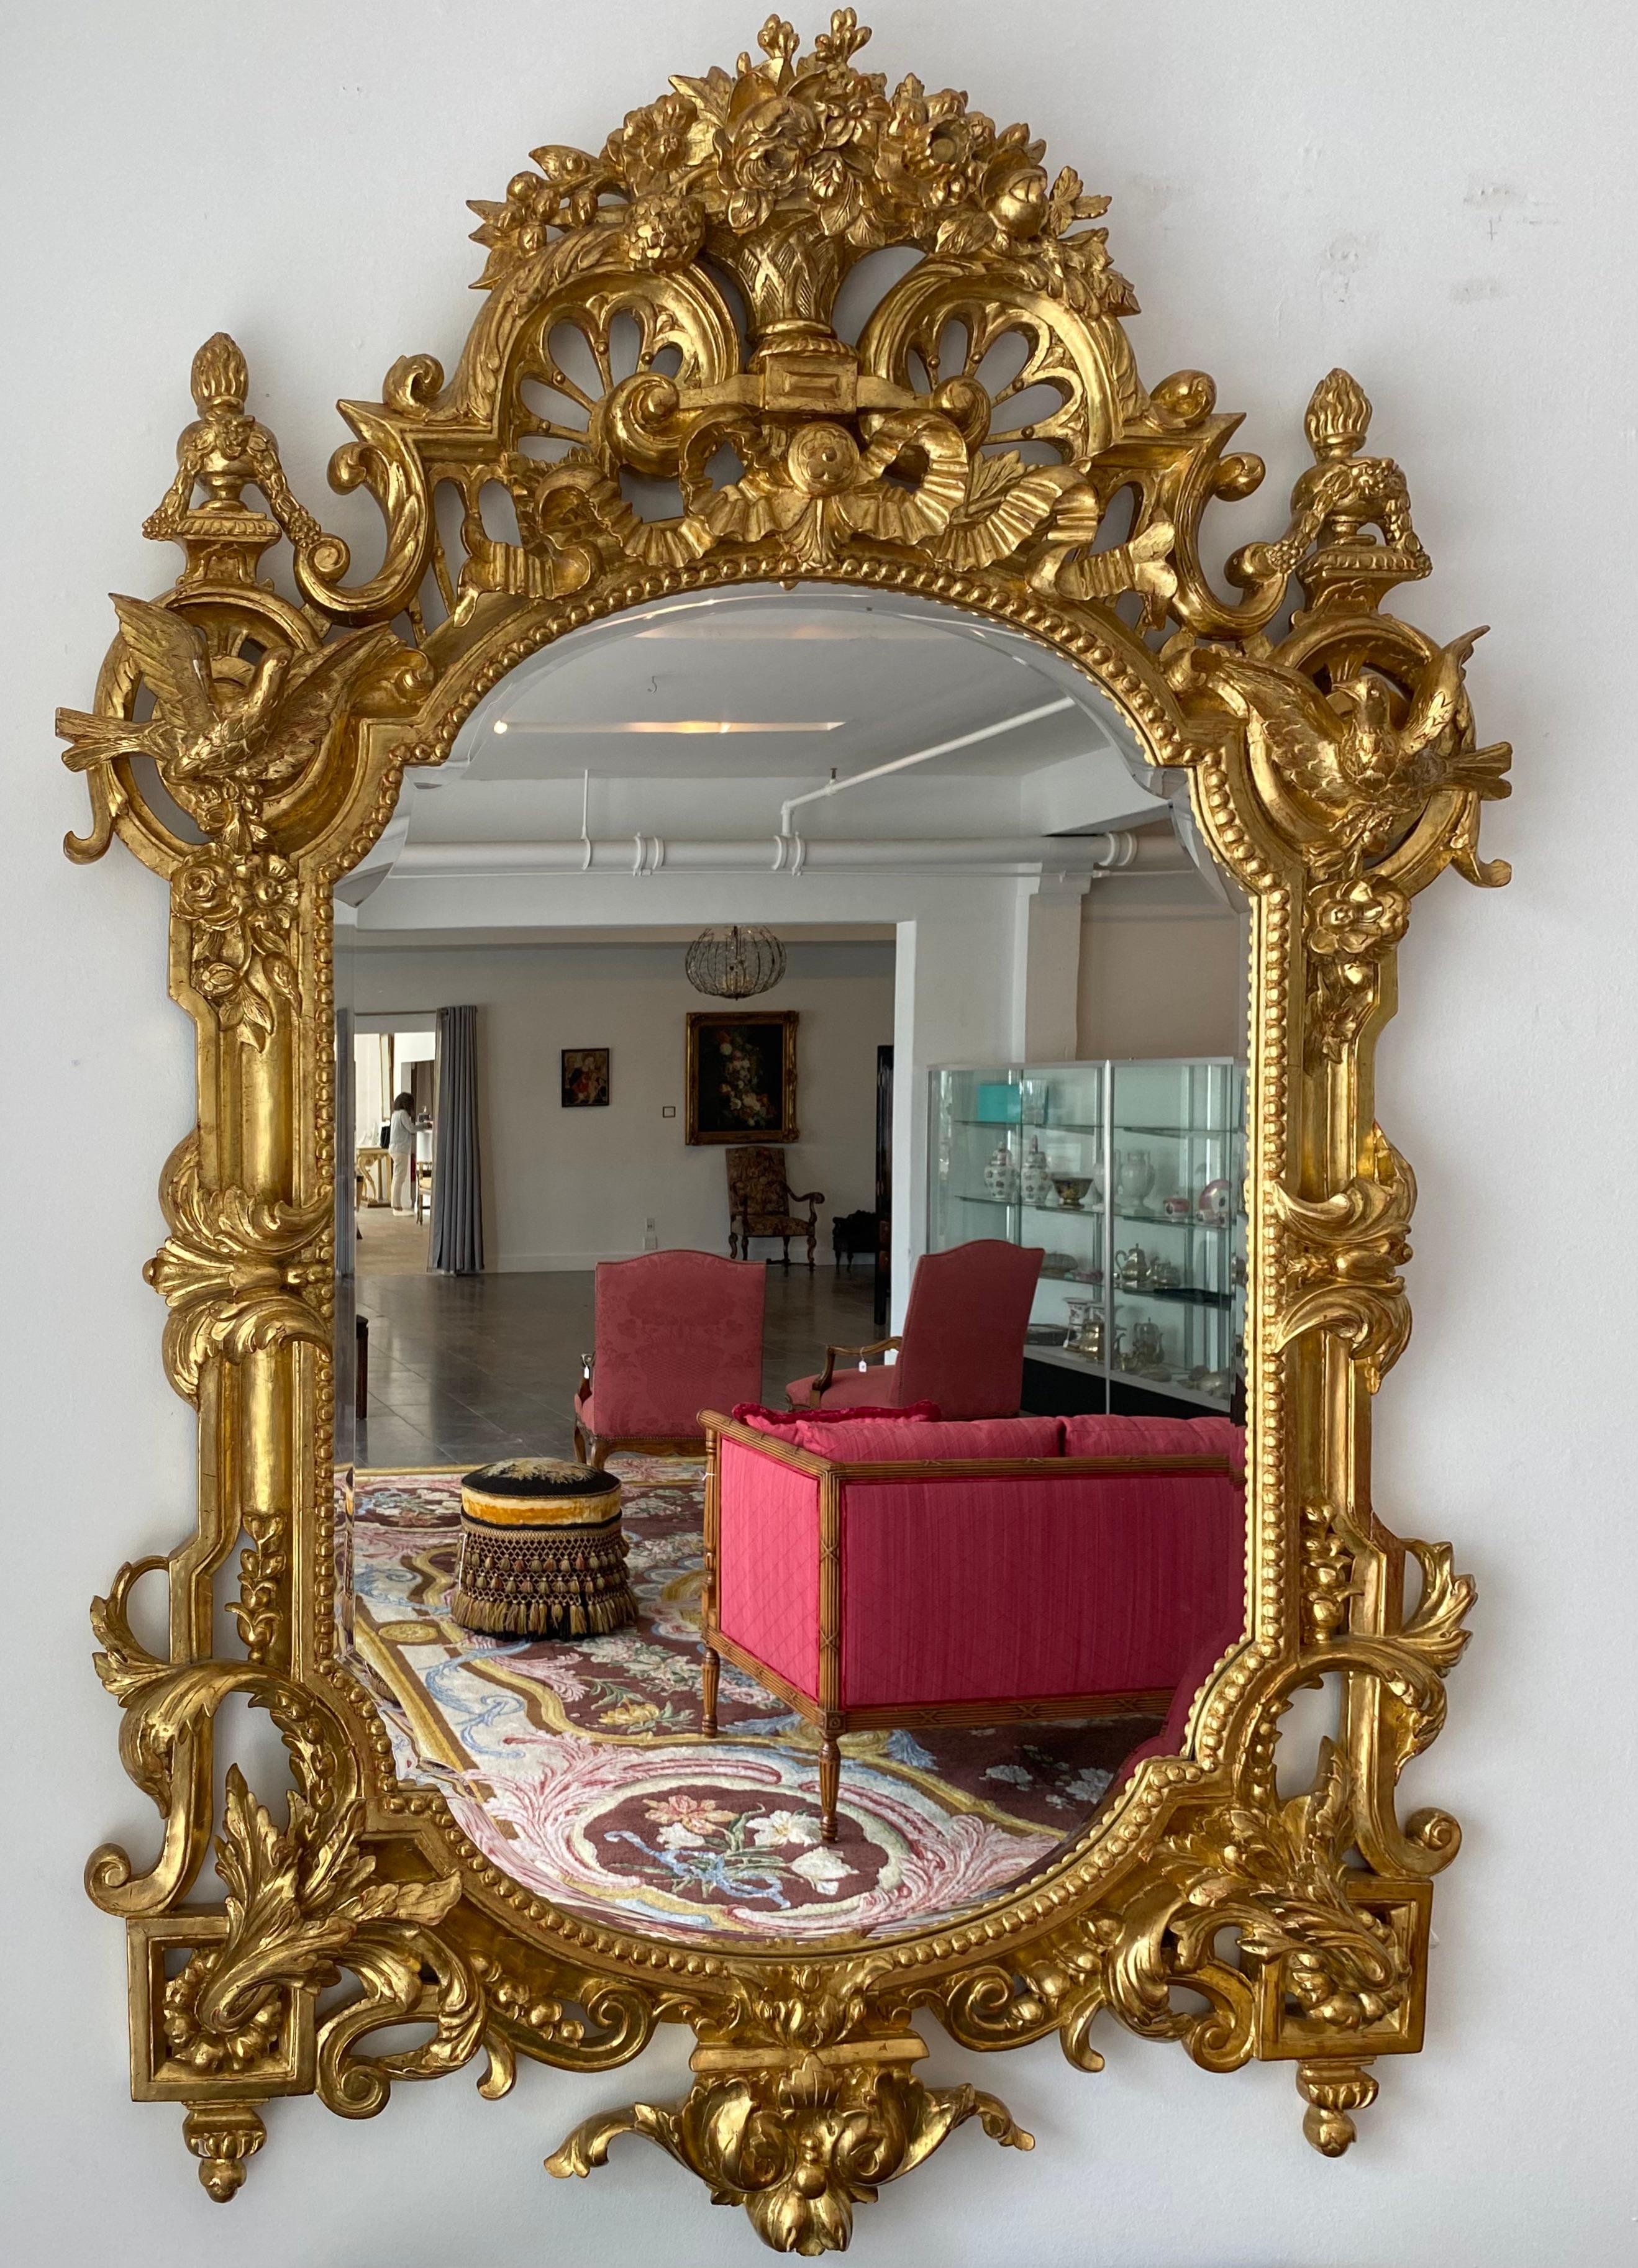 Ein feiner und sehr großzügiger französischer Régence-Spiegel aus vergoldetem Holz mit Vasen und Vögeln, die mit außergewöhnlichen handgeschnitzten Elementen verziert sind.

Ein französischer Régence-Spiegel aus vergoldetem Holz aus dem frühen 20.